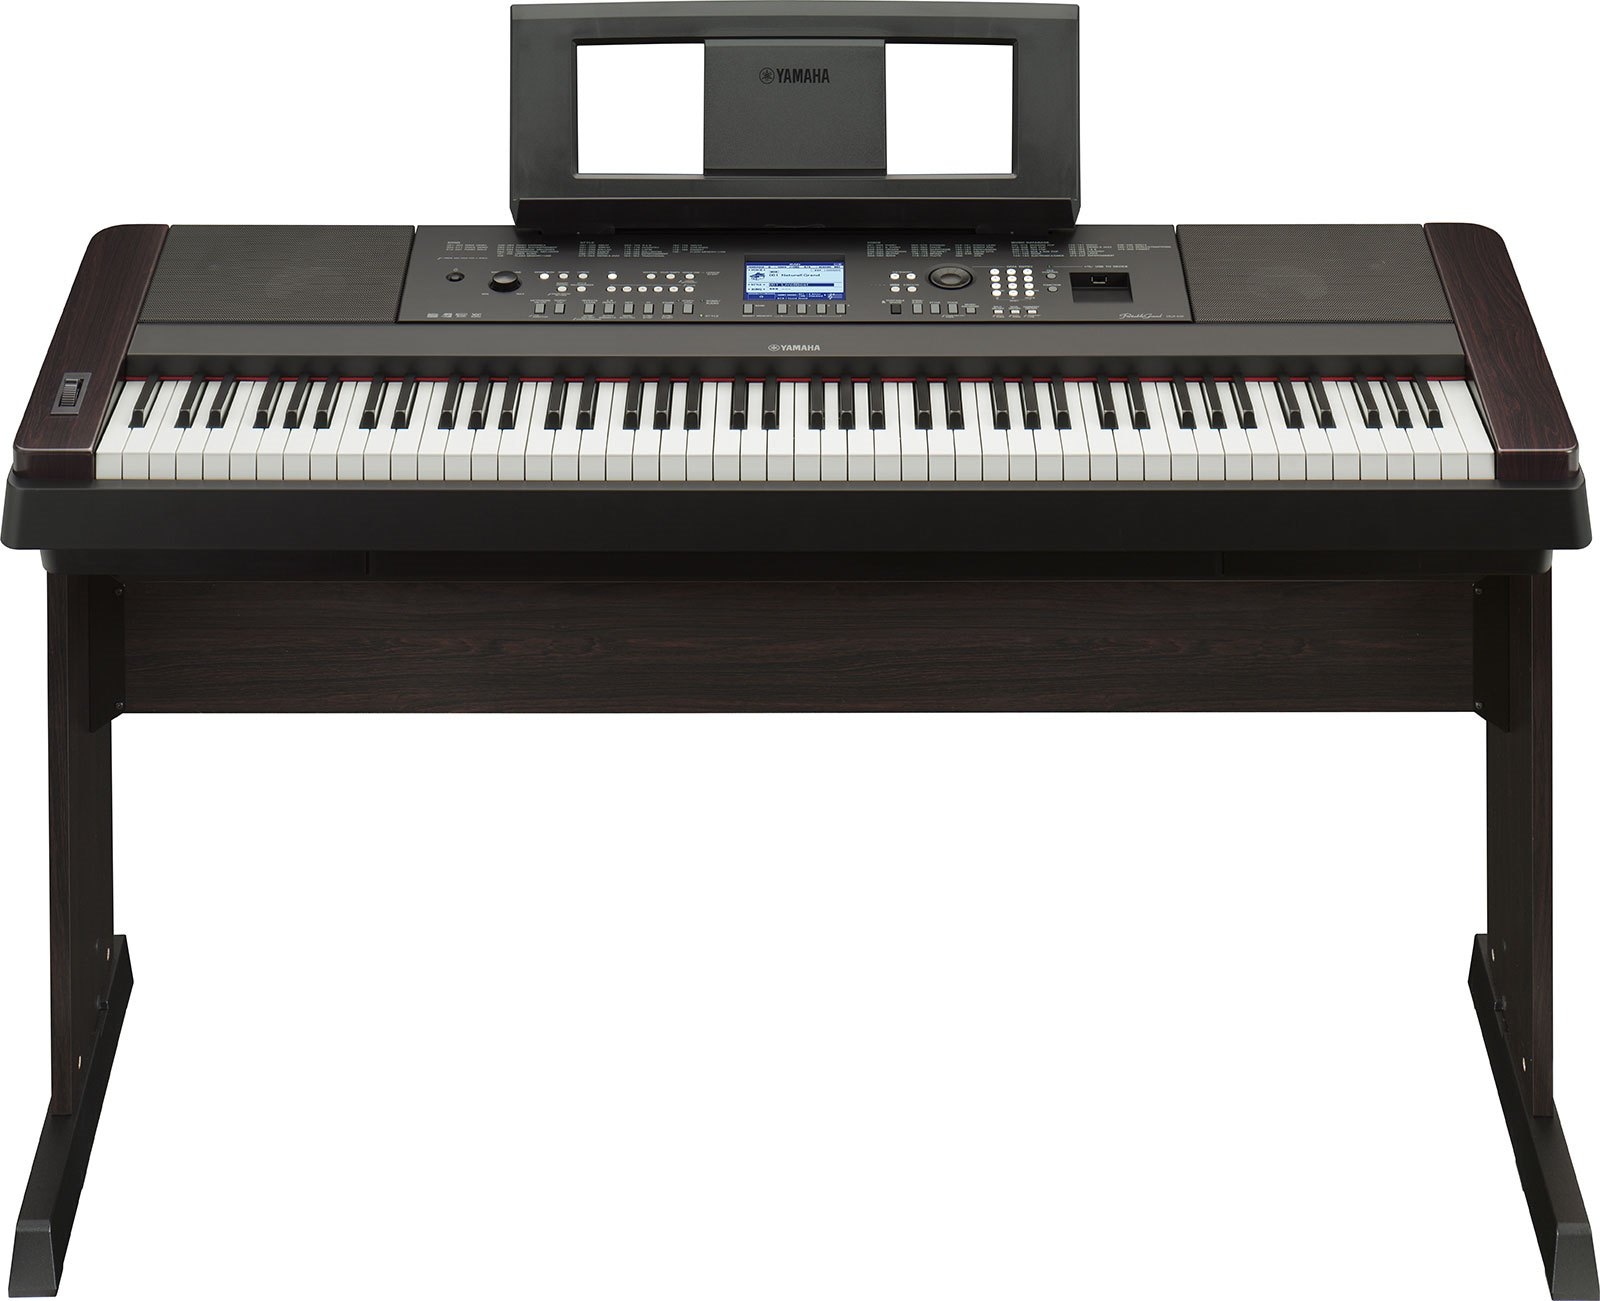 Ямаха бу купить в москве. Цифровое пианино-синтезатор Yamaha DGX-660. Yamaha DGX 650. Yamaha 650 синтезатор. Синтезатор Yamaha DGX.